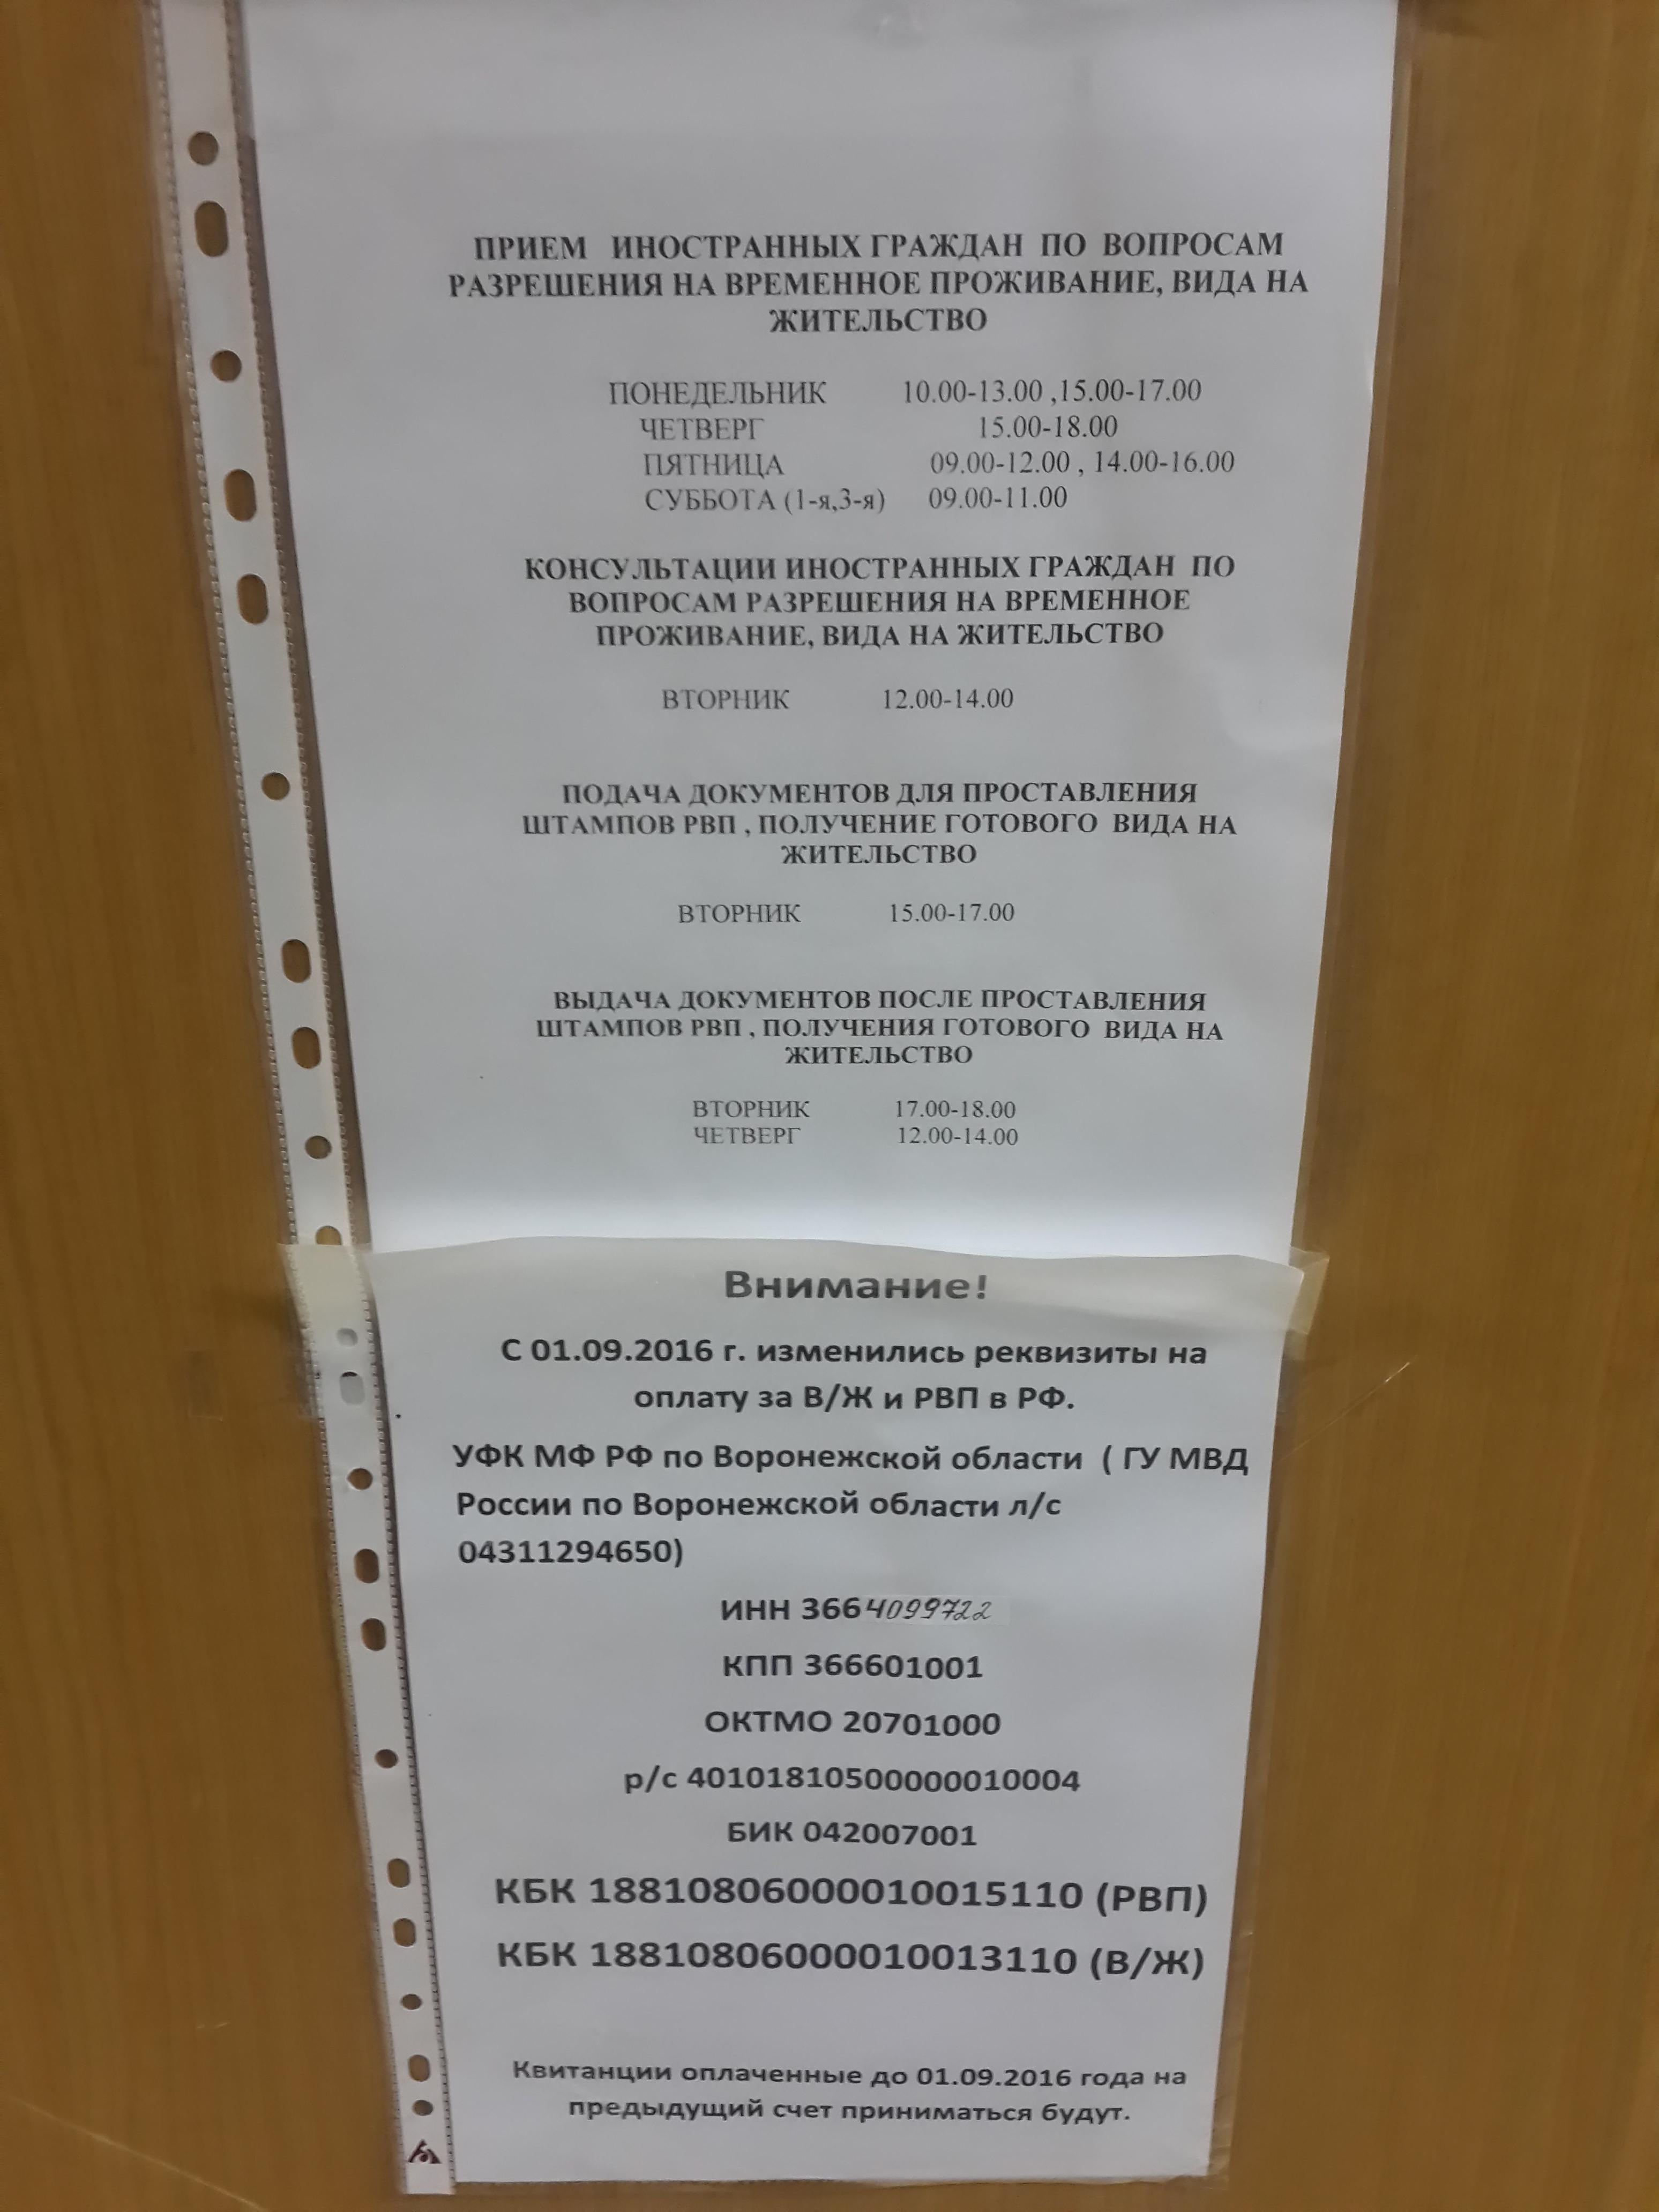 Паспорт стол ленинского района режим работы